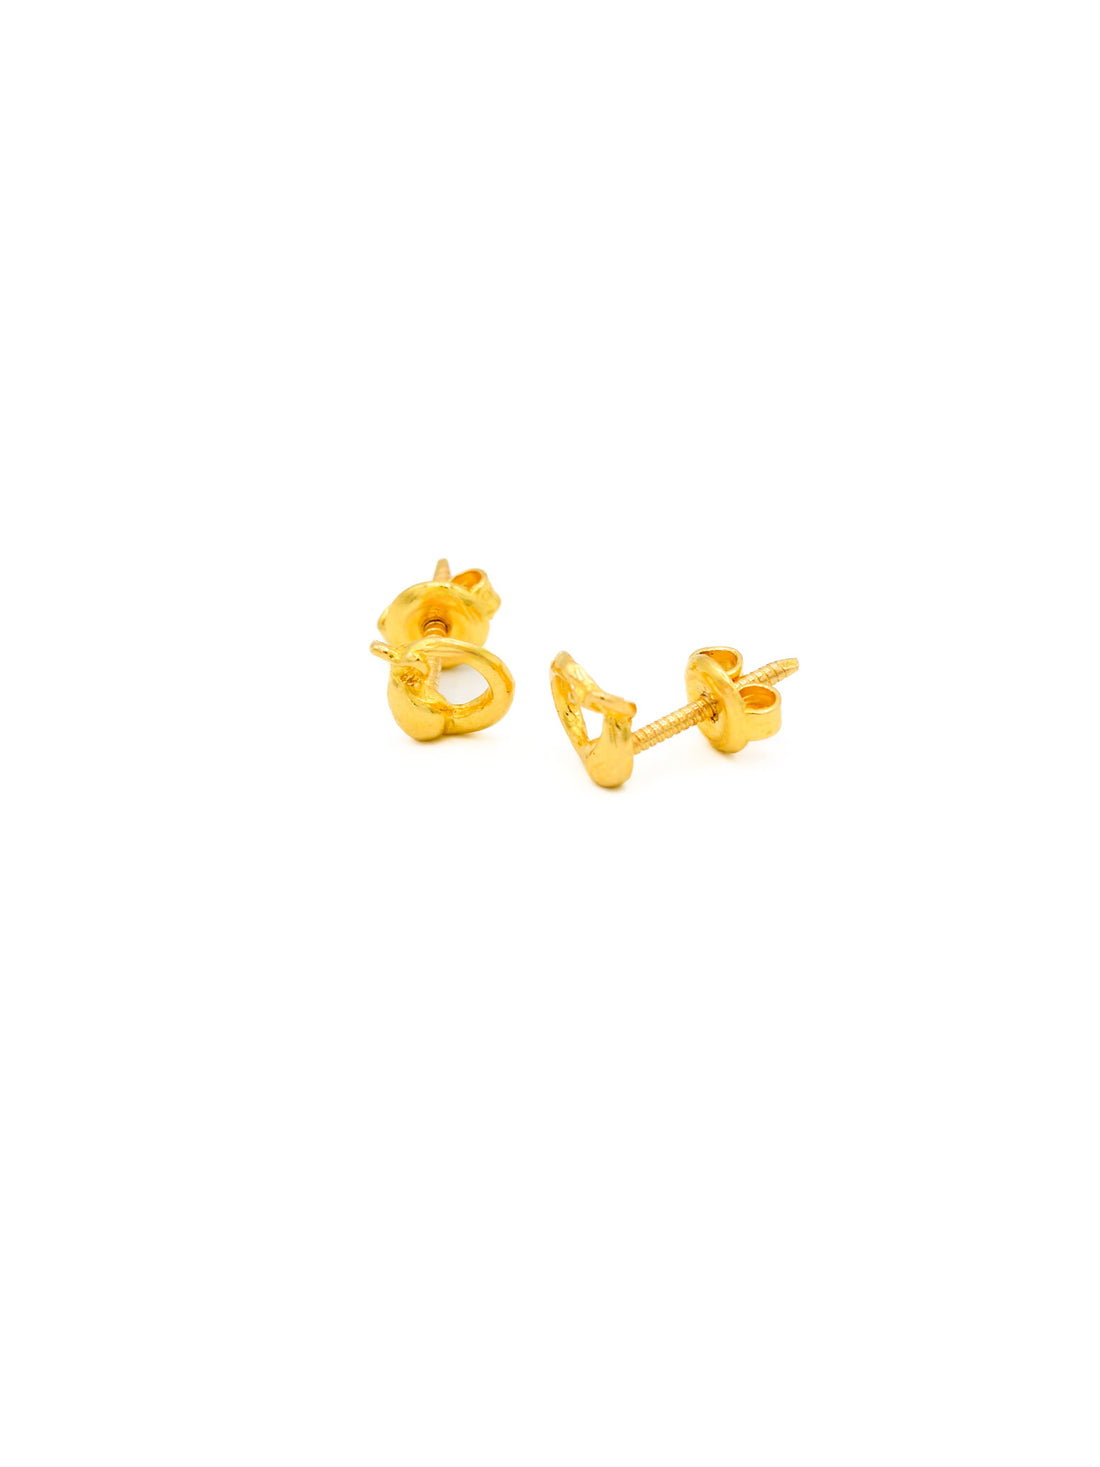 22ct Gold Stud Earrings - Roop Darshan